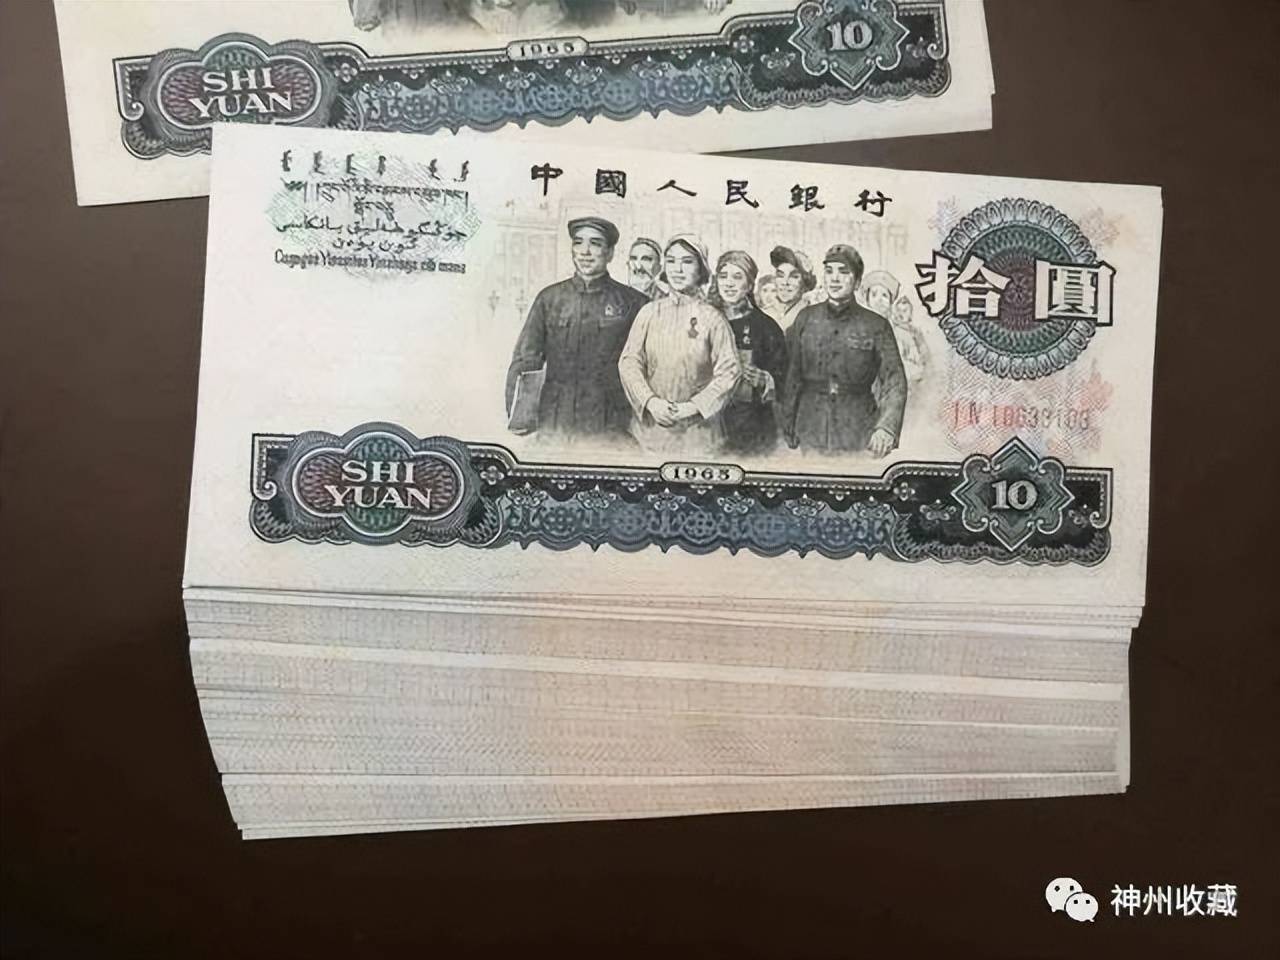 新版500元人民币将发行图片